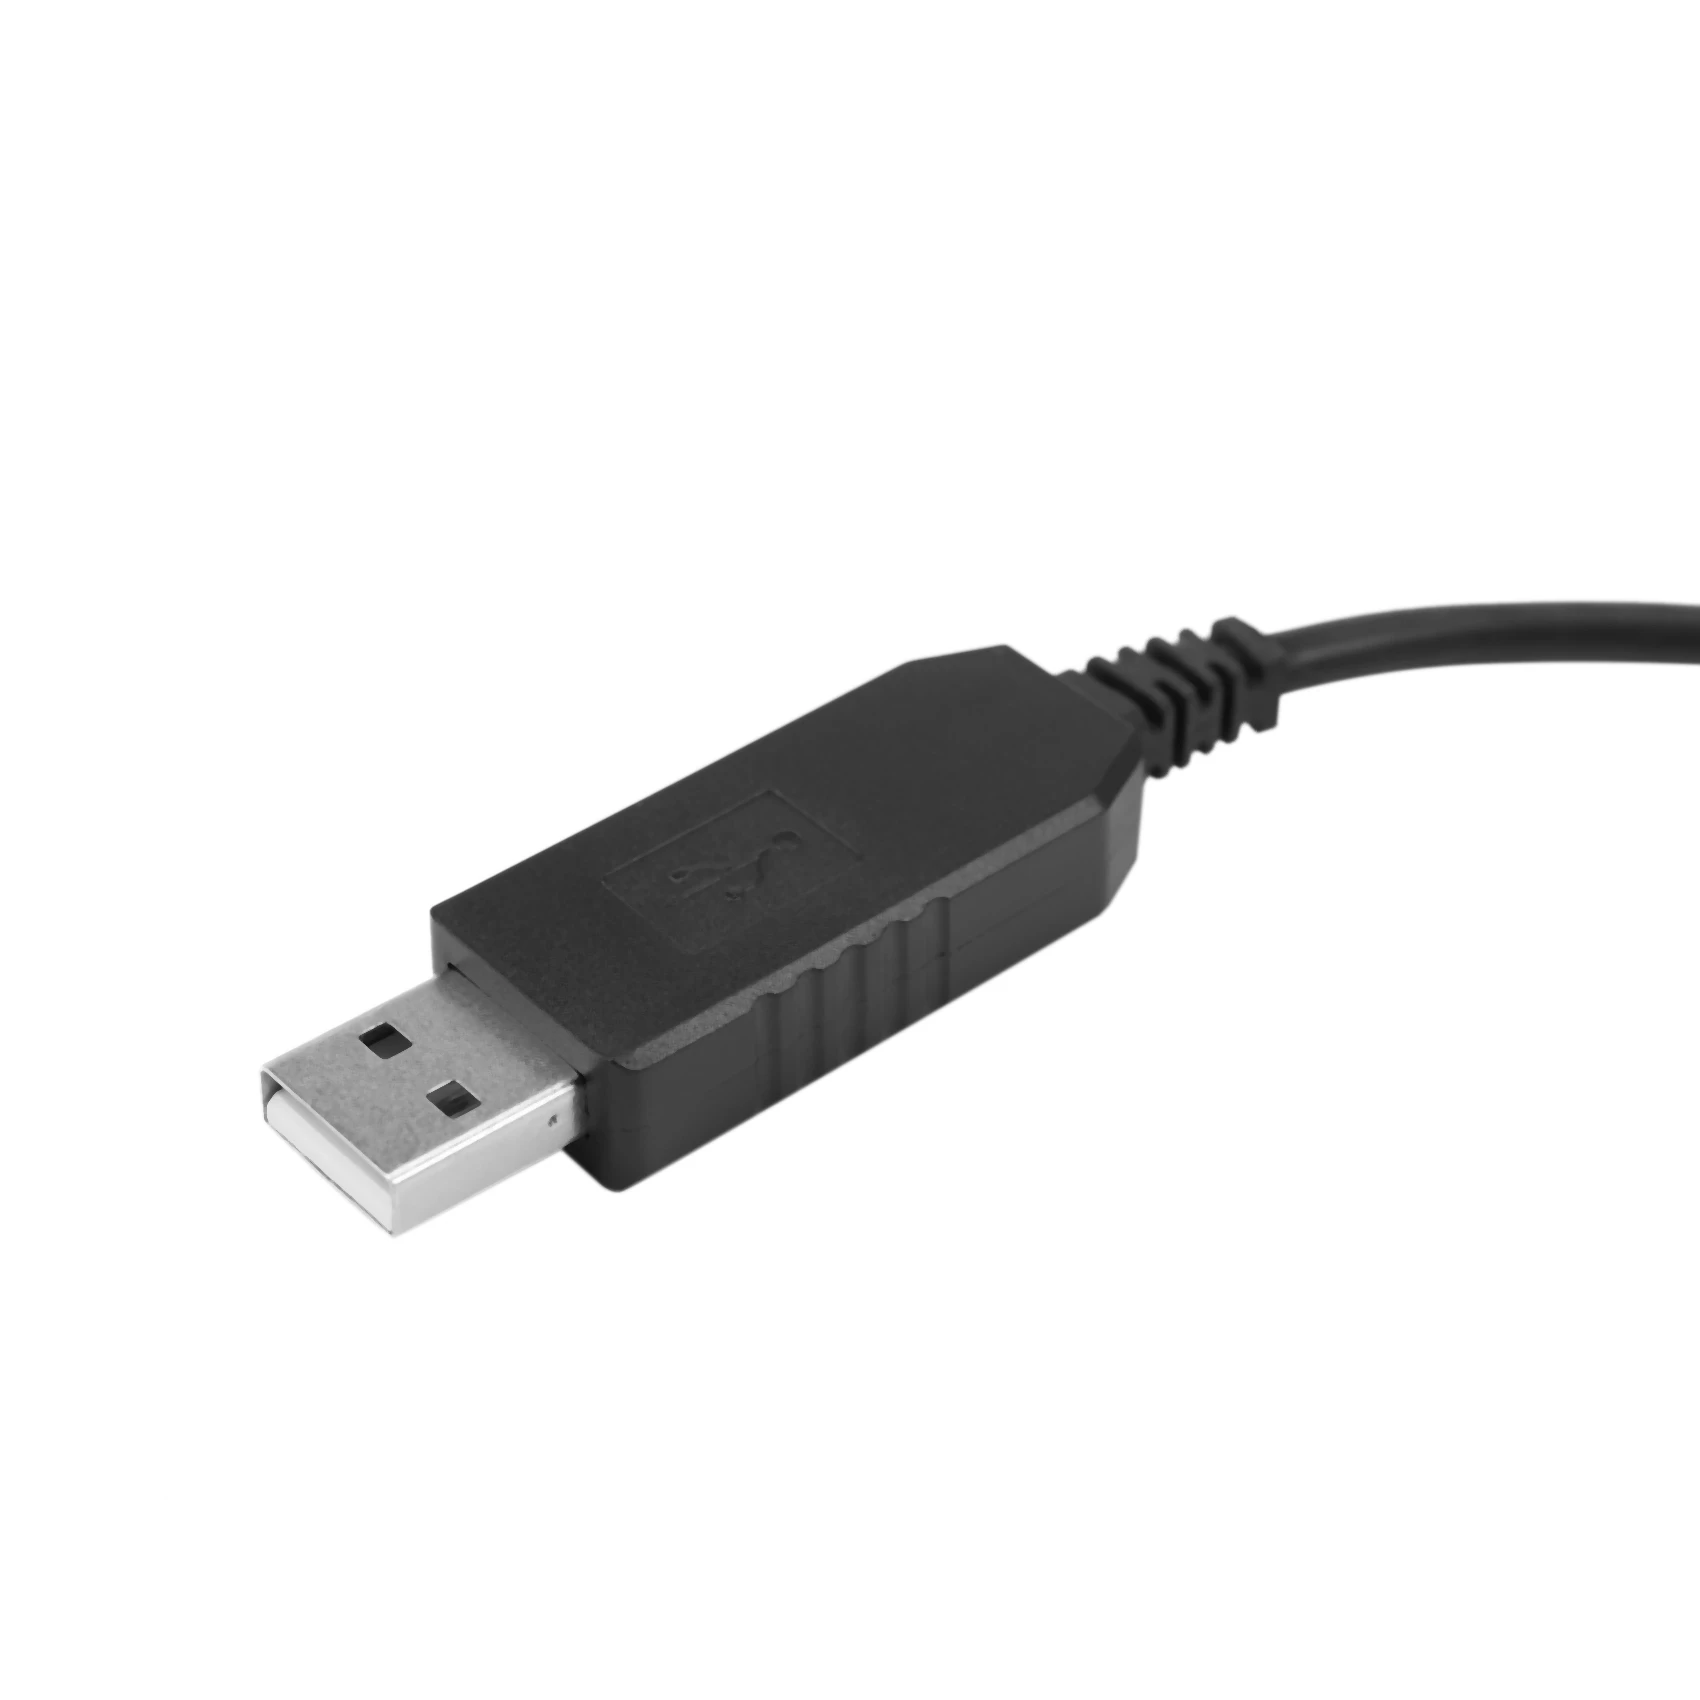 USB Programming Cable For QYT KT-8900R,KT-8900D,KT-7900D Mobile Transceiver images - 6